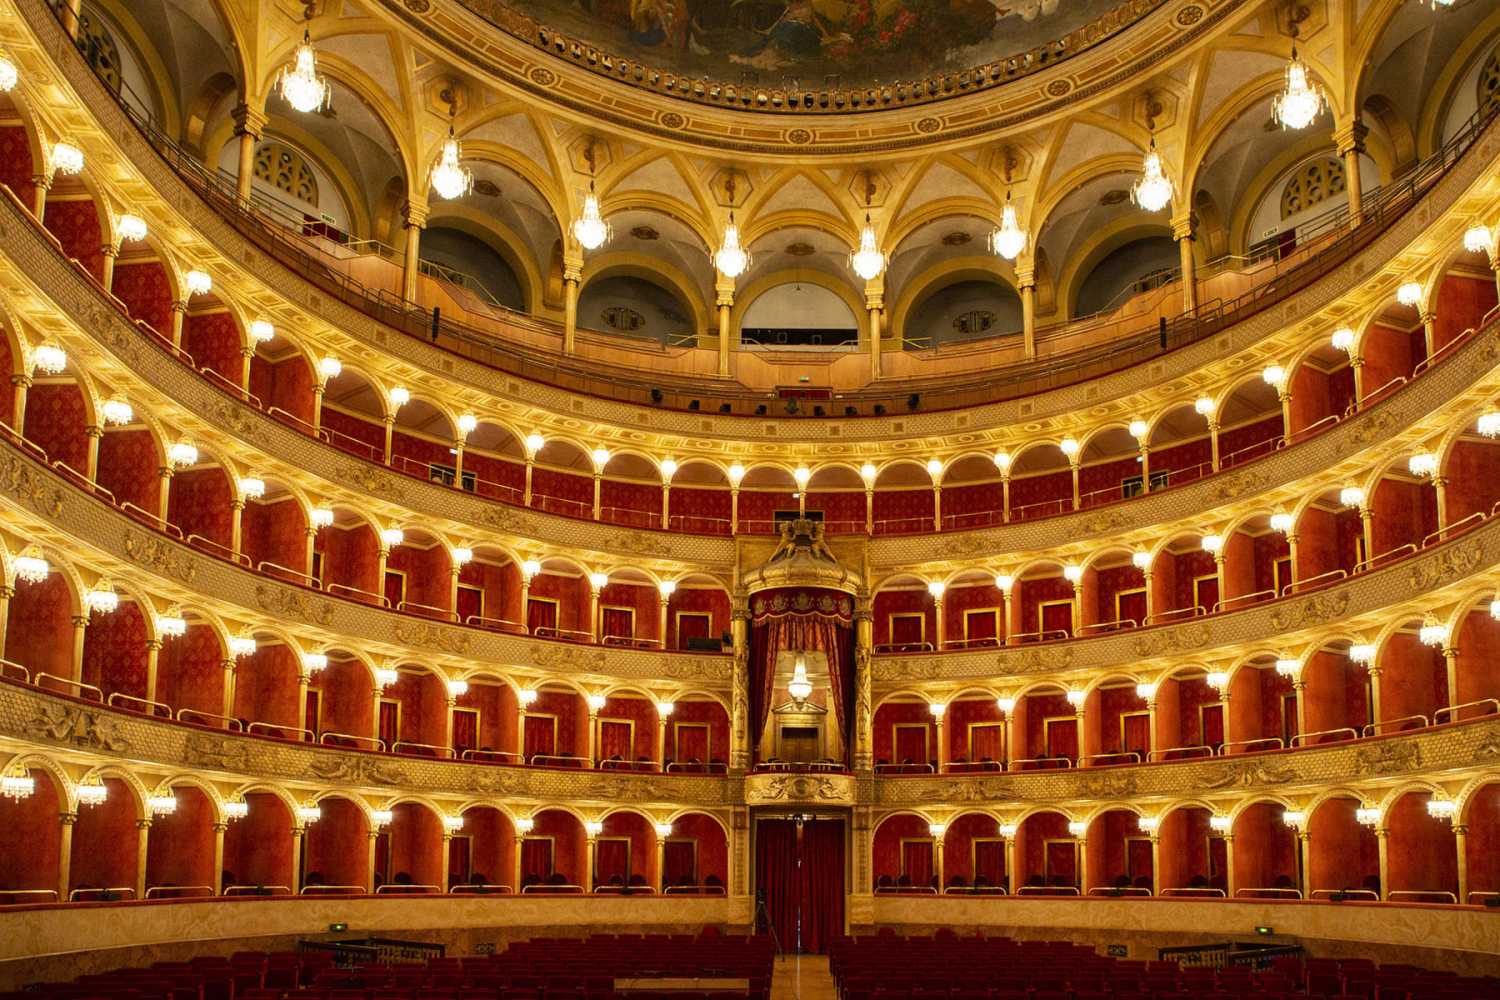 The Teatro dell’Opera di Roma